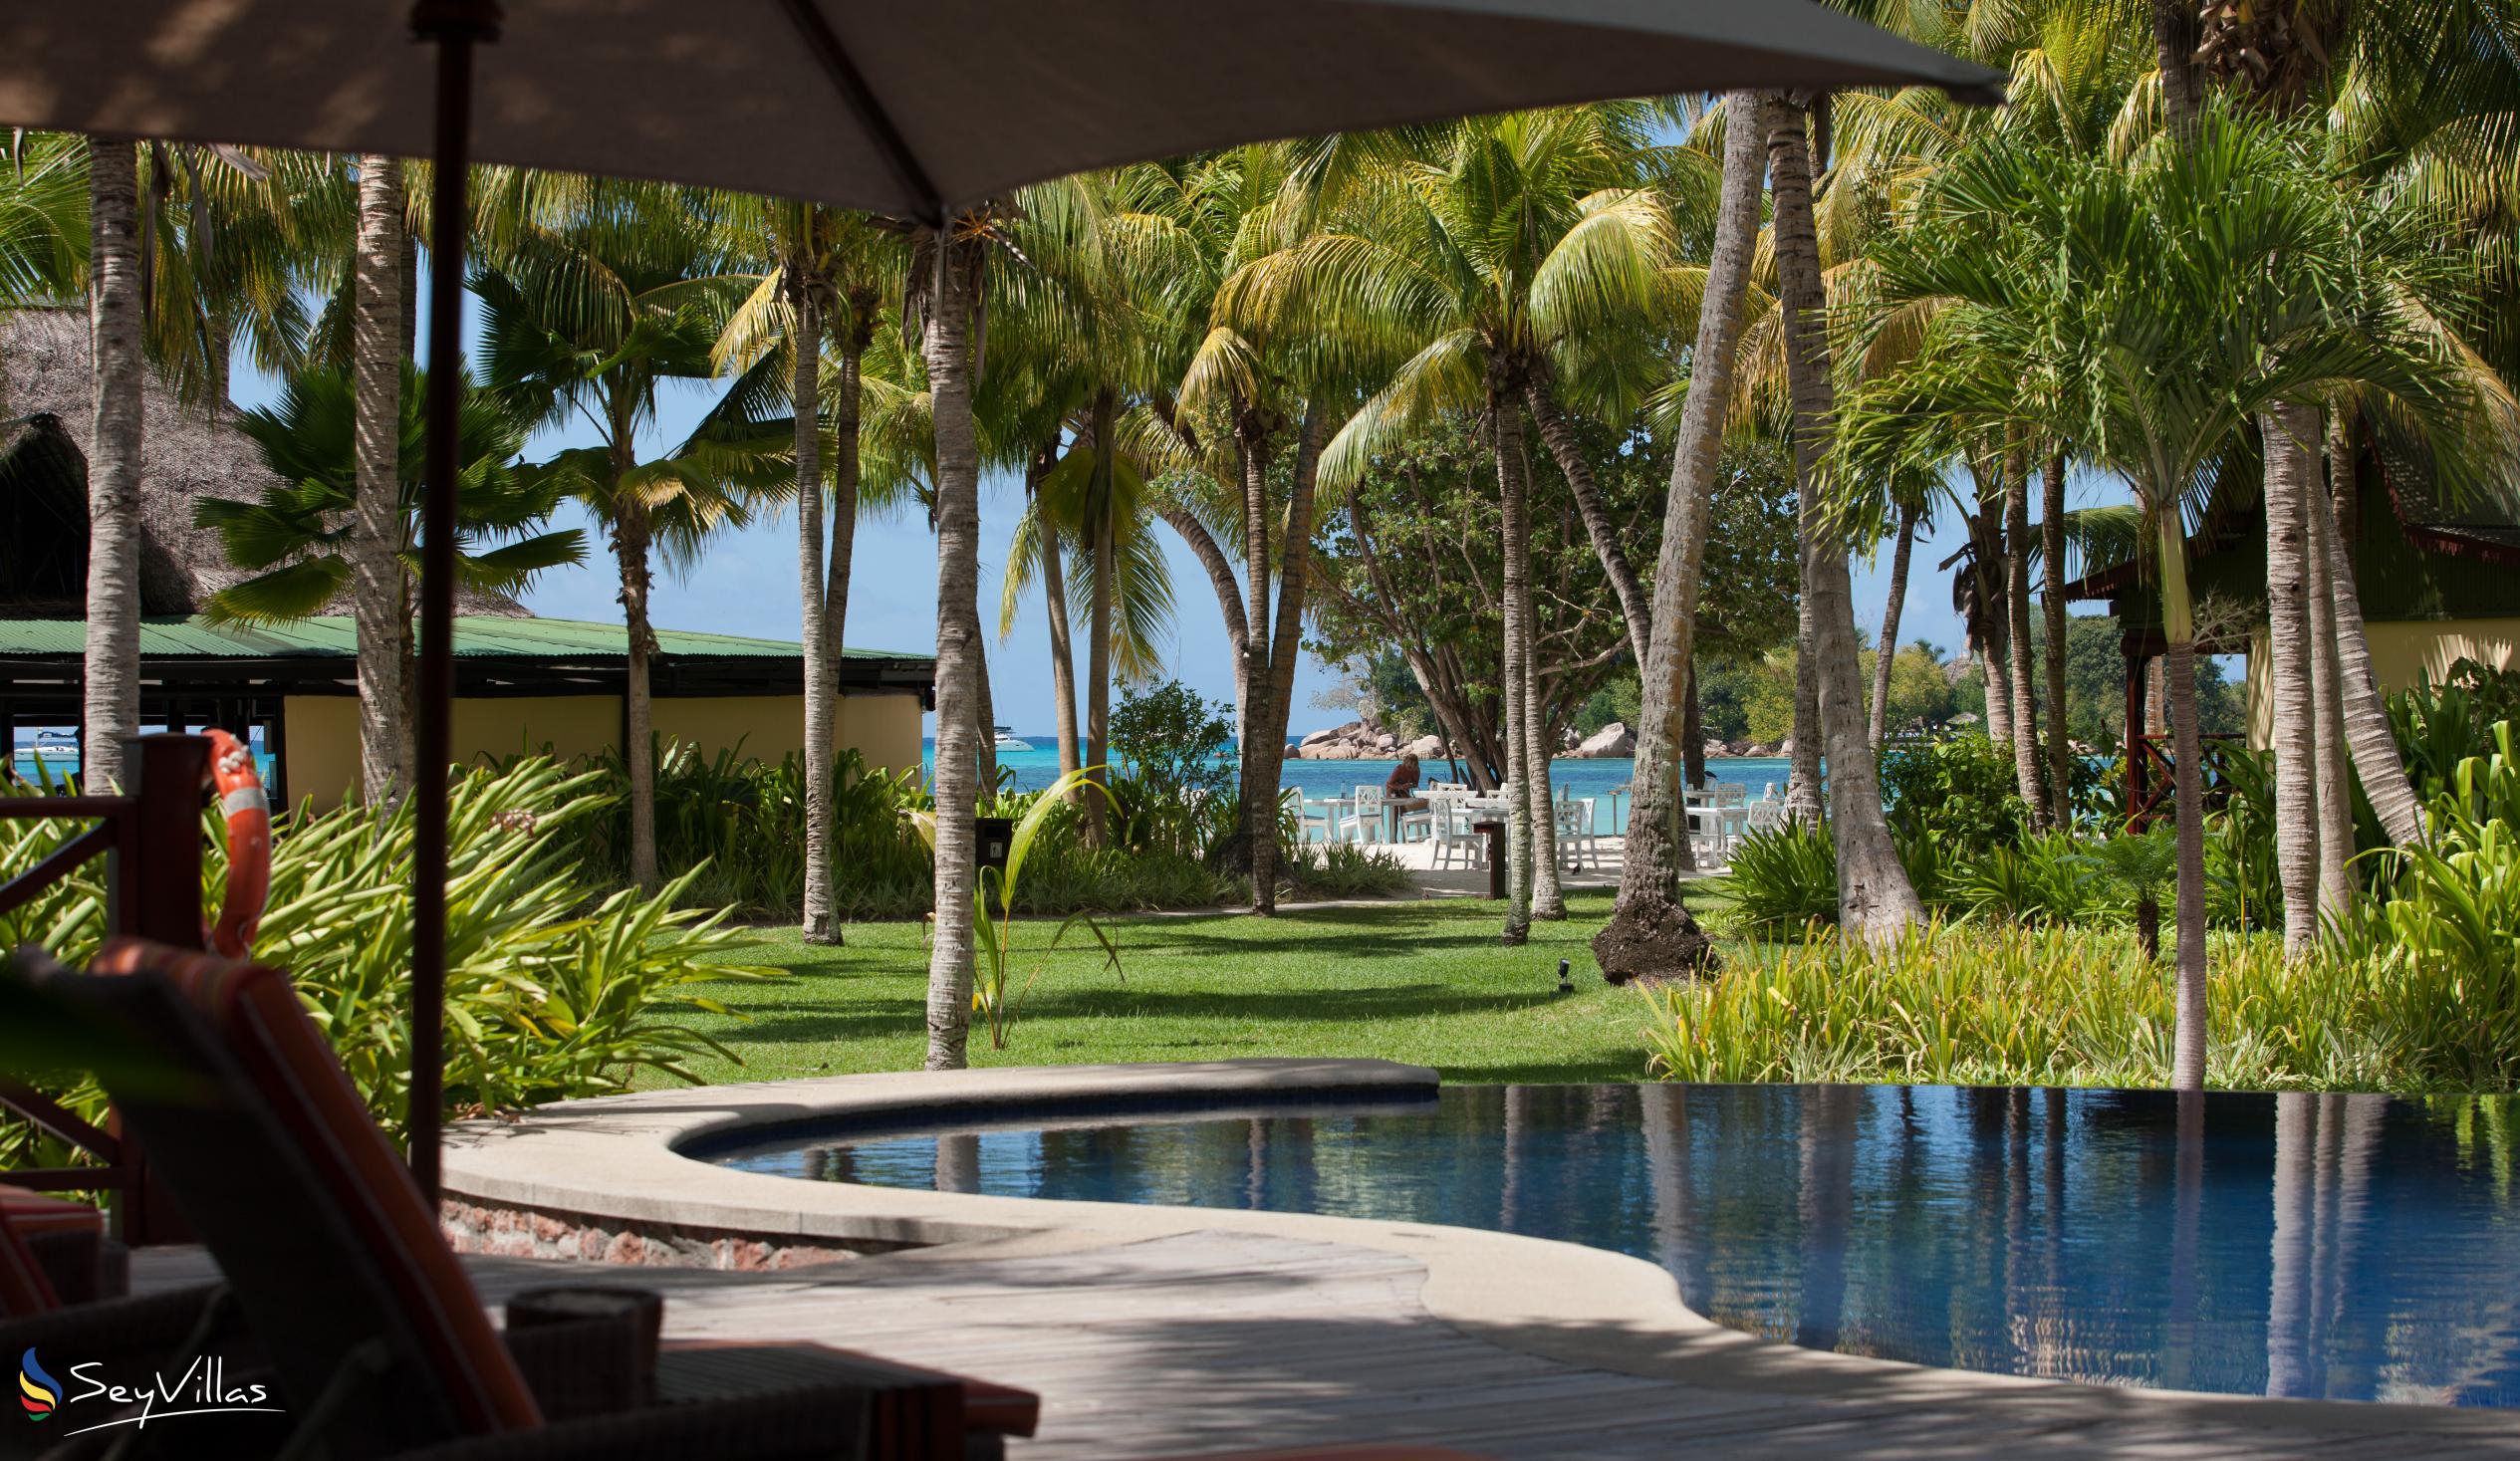 Photo 21: Paradise Sun Hotel - Outdoor area - Praslin (Seychelles)